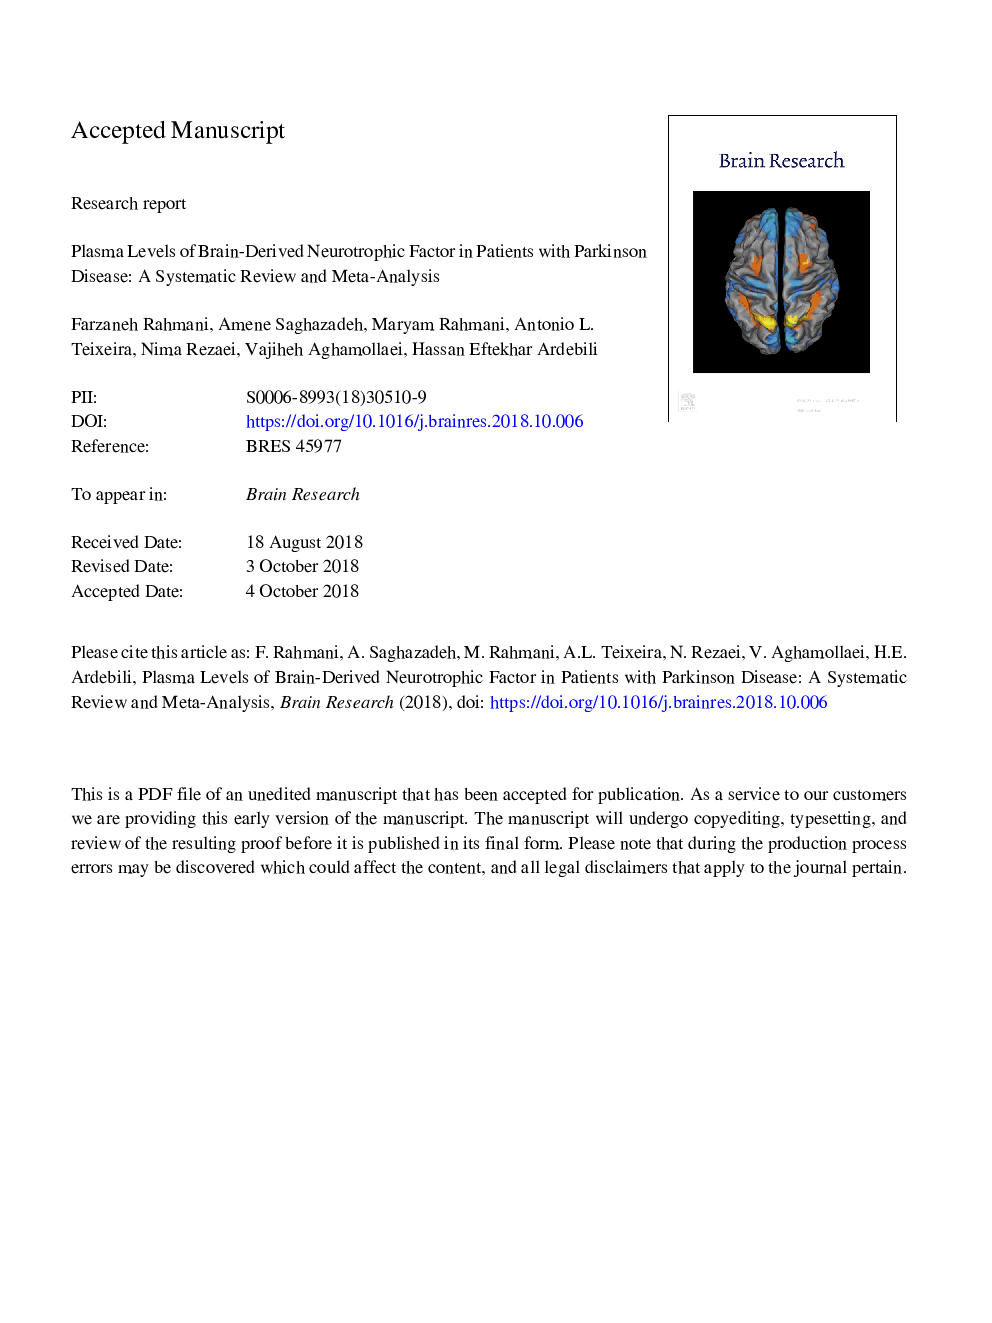 سطوح پلاسمایی فاکتور نوروتروفی مشتق شده مغز در بیماران مبتلا به بیماری پارکینسون: بررسی منظم و متاآنالیز